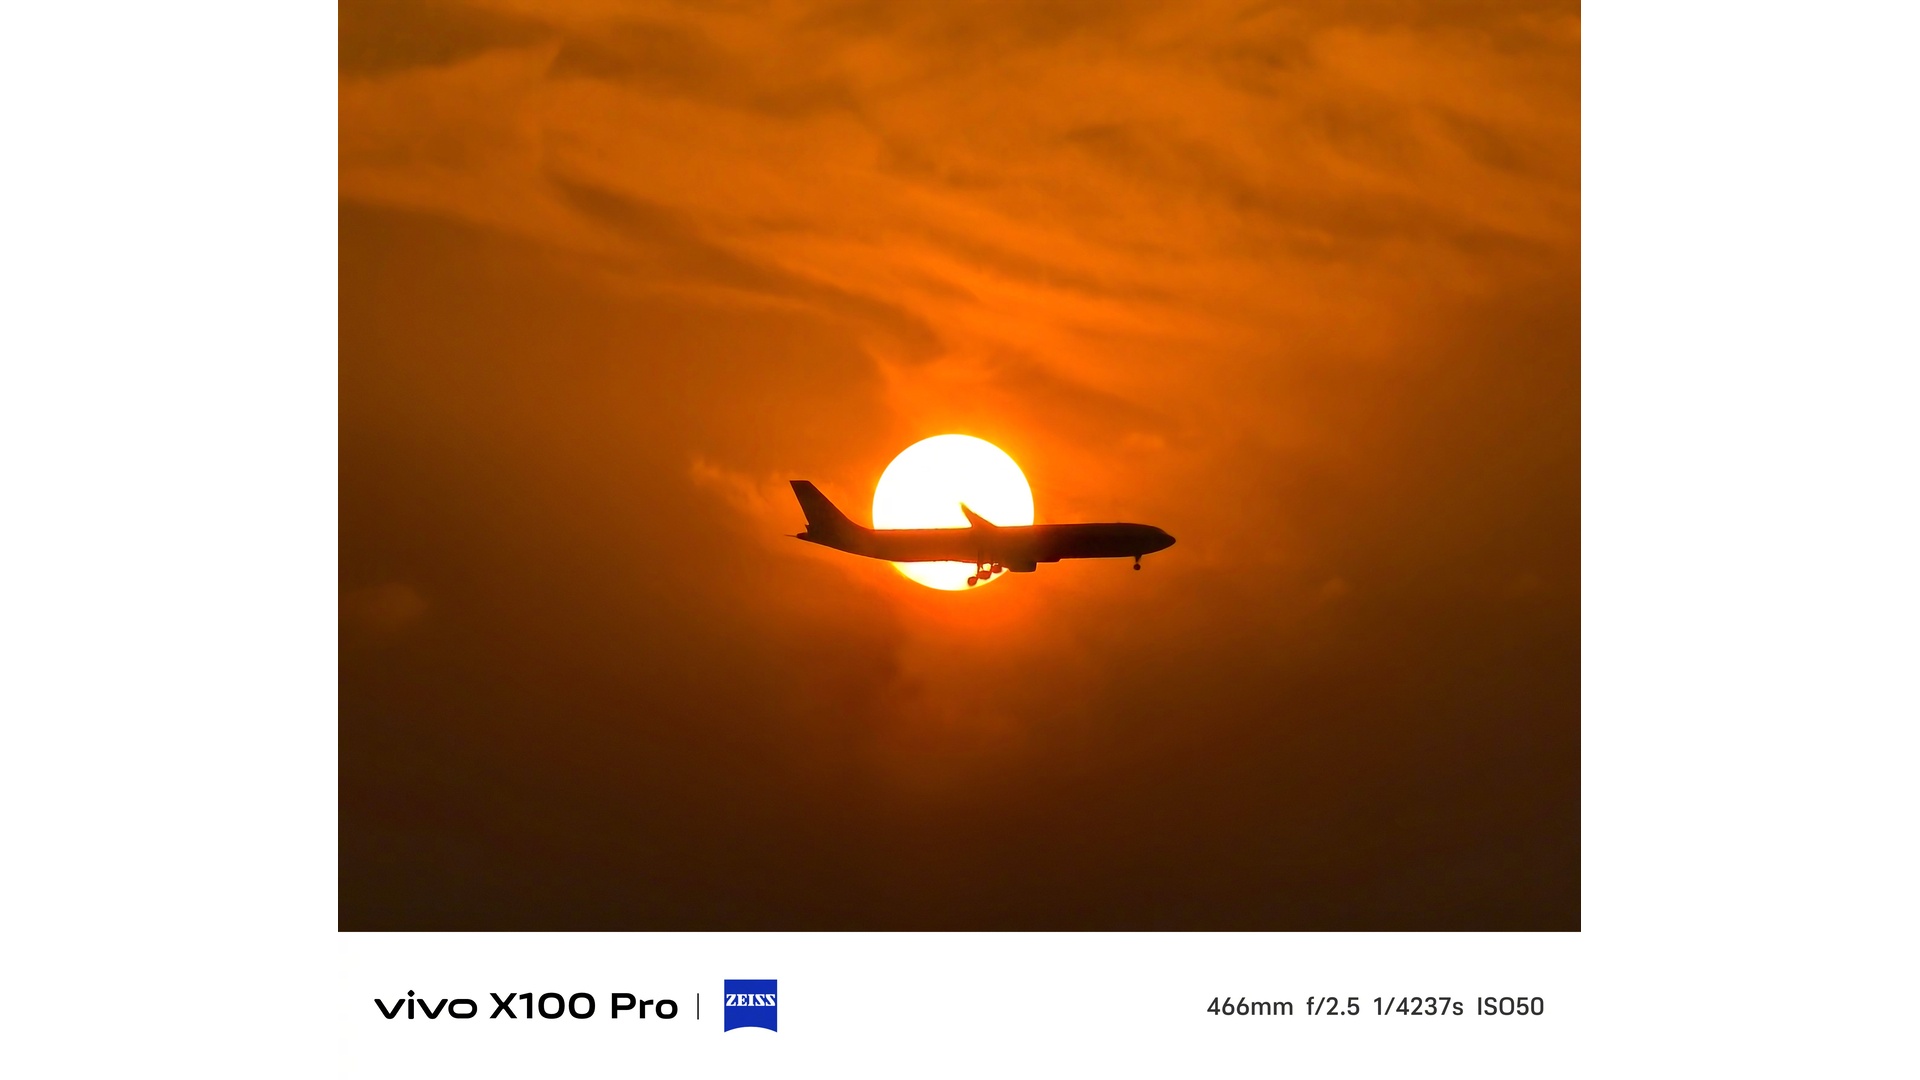 عکس Vivo X100 Pro از غروب خورشید گرفته شده است